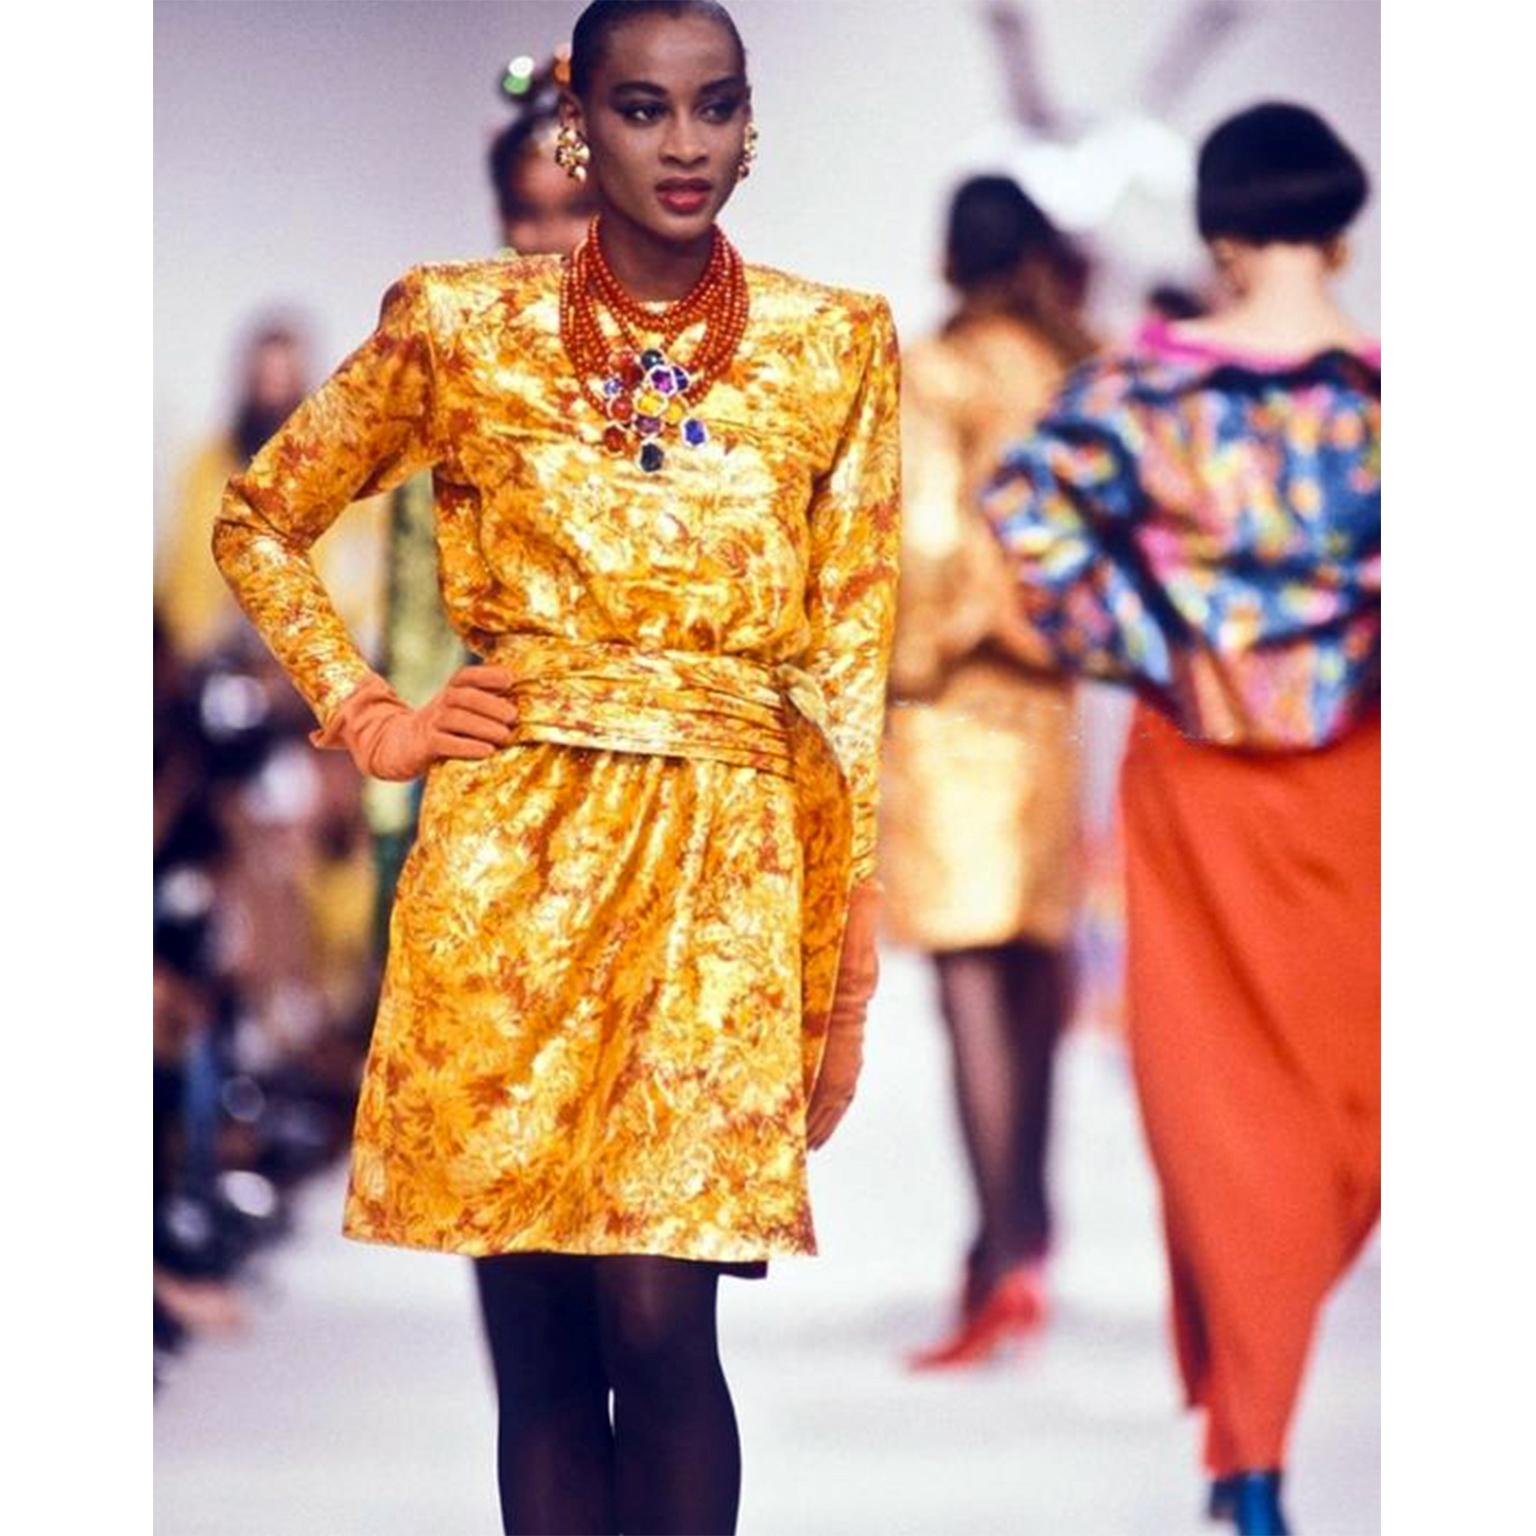 Cette robe YSL vintage exceptionnelle est un stock mort et a été conçue par Yves Saint Laurent pour sa collection Automne/Hiver 1989/90. Nous montrons une image de la même robe sur le podium de cette saison. (image non incluse).

La robe présente un